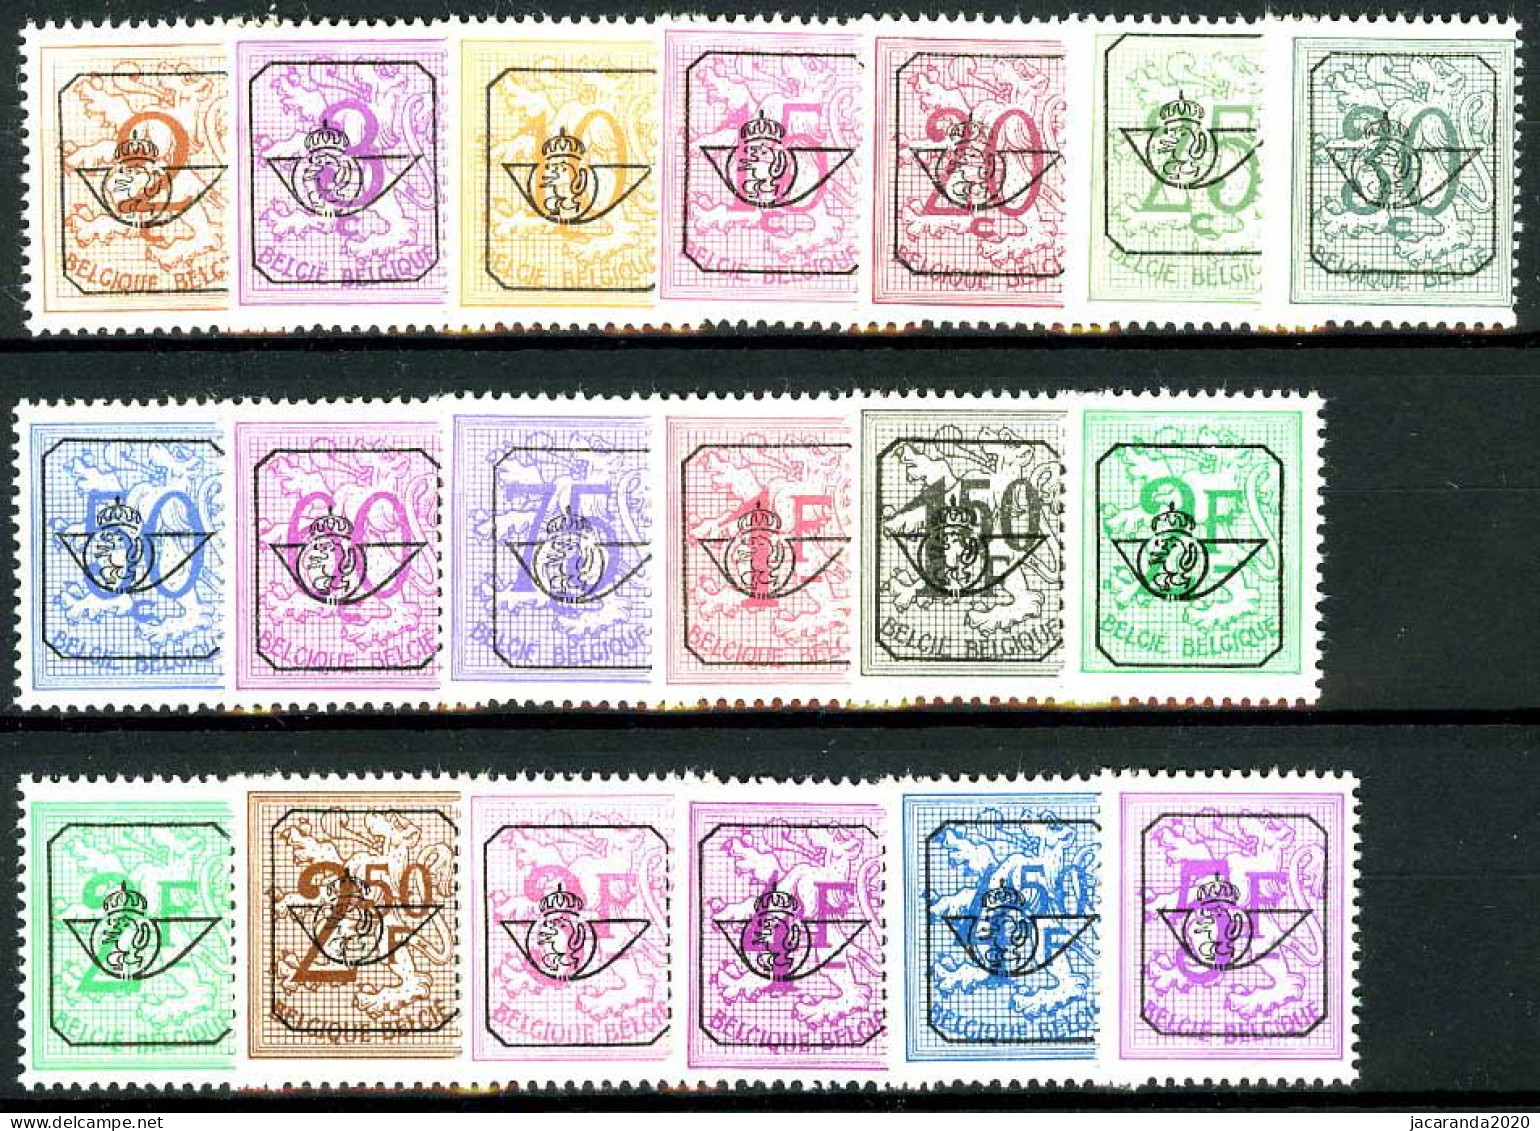 België PRE780/PRE798 ** - 1967 - Cijfer Op Heraldieke Leeuw - Chiffre Sur Lion Héraldique - Preo Reeks 60 - 19w. - P1+P2 - Typografisch 1951-80 (Cijfer Op Leeuw)